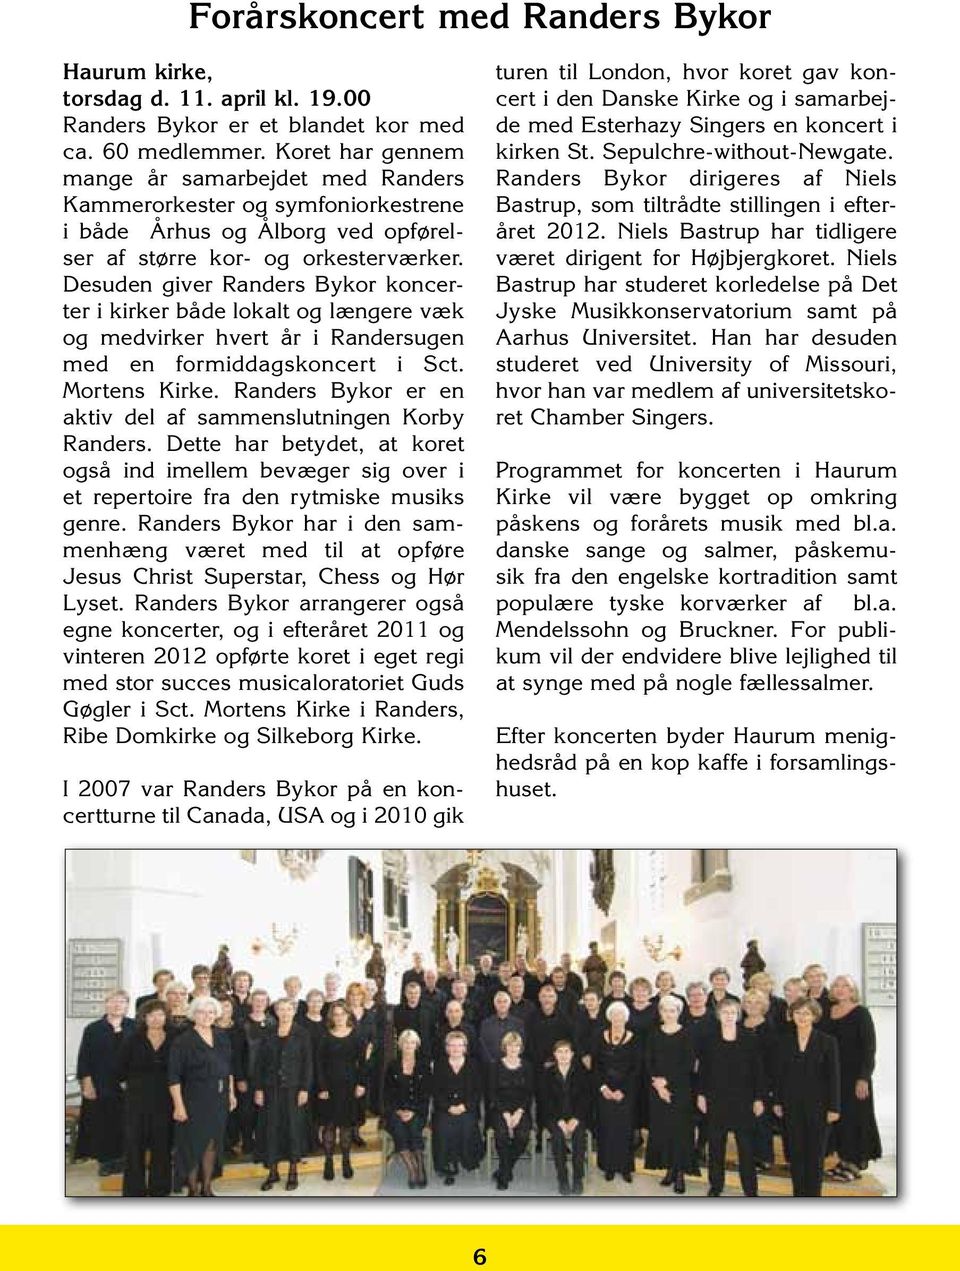 Desuden giver Randers Bykor koncerter i kirker både lokalt og længere væk og medvirker hvert år i Randersugen med en formiddagskoncert i Sct. Mortens Kirke.